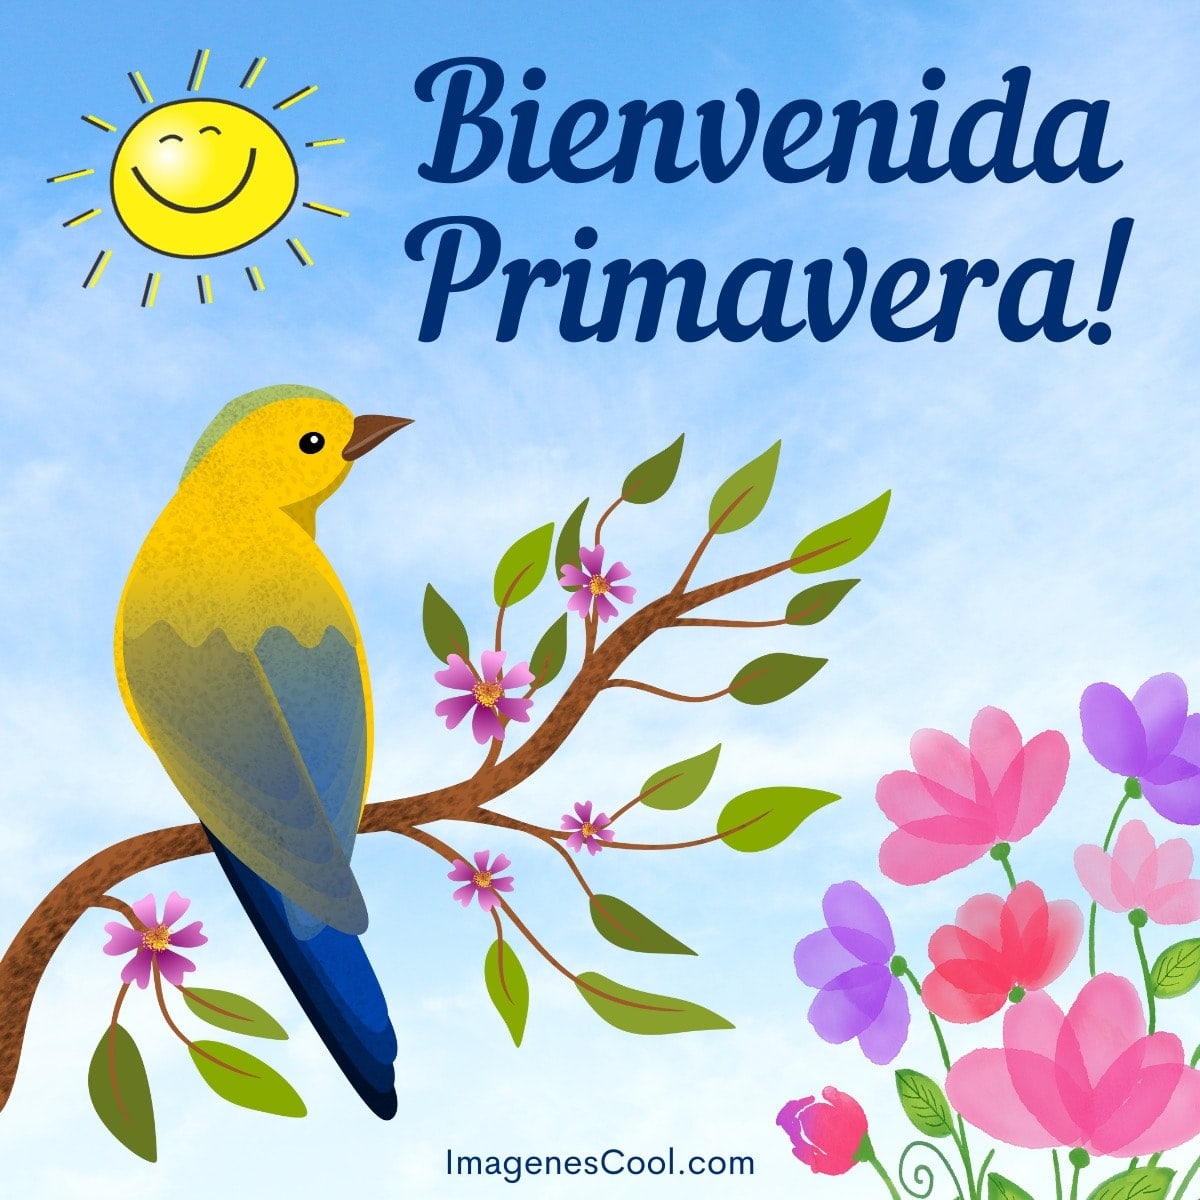 Un pájaro en una rama con flores y un sol sonriente. Texto: Bienvenida Primavera!